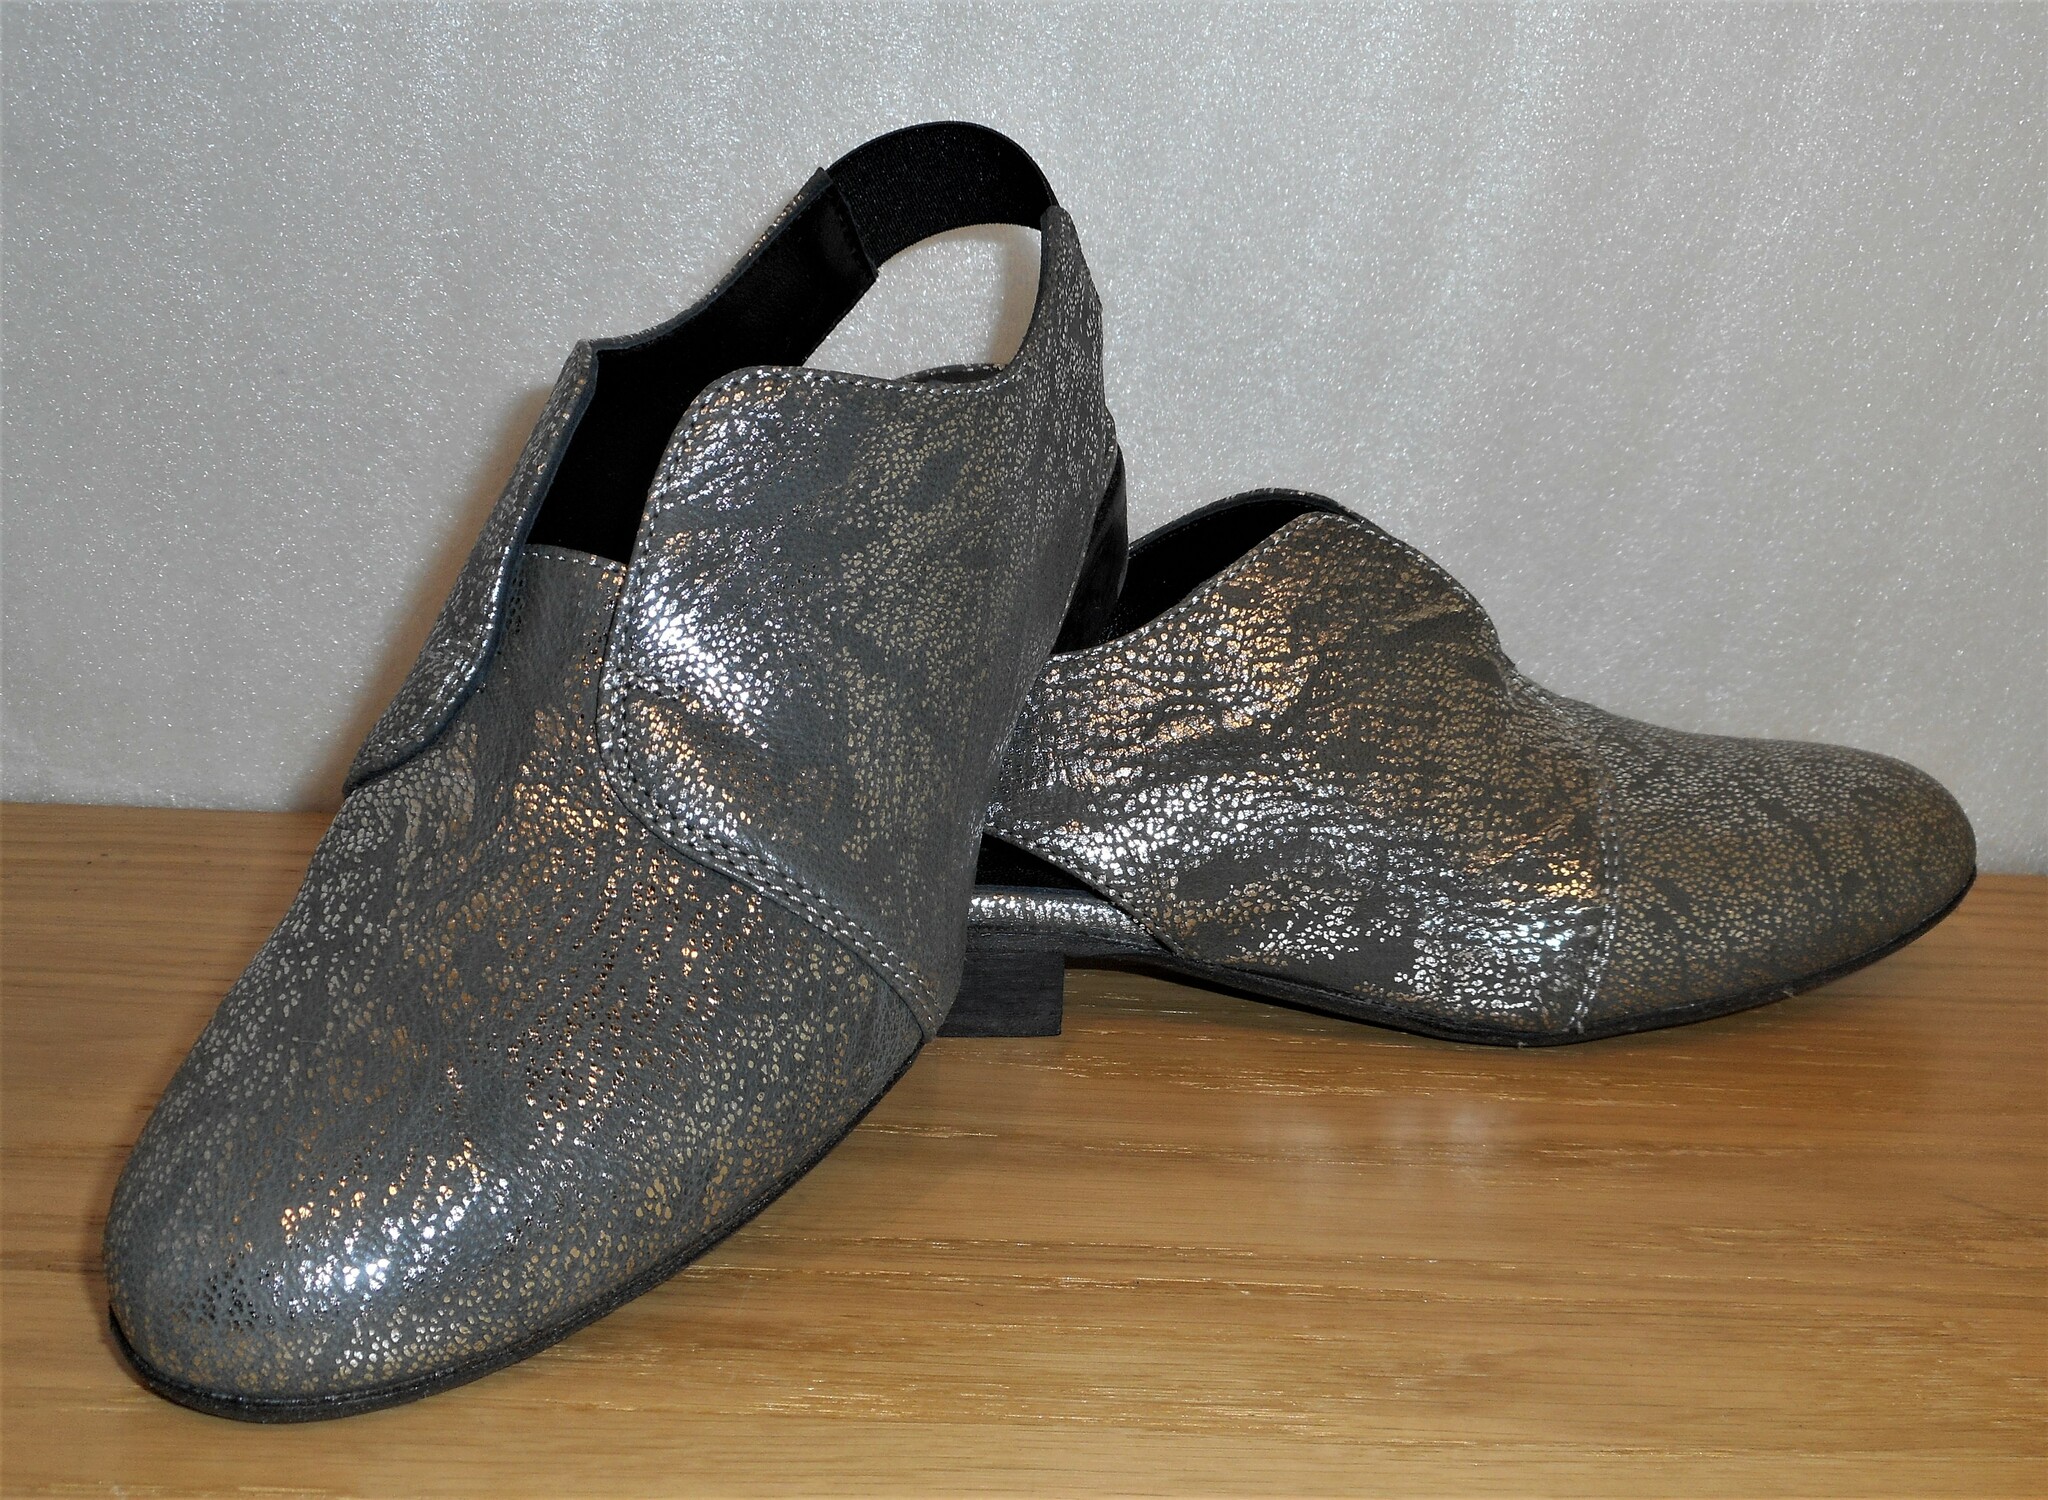 Silvergrå (mörk) sko med slingback - Fabrikat Merygen